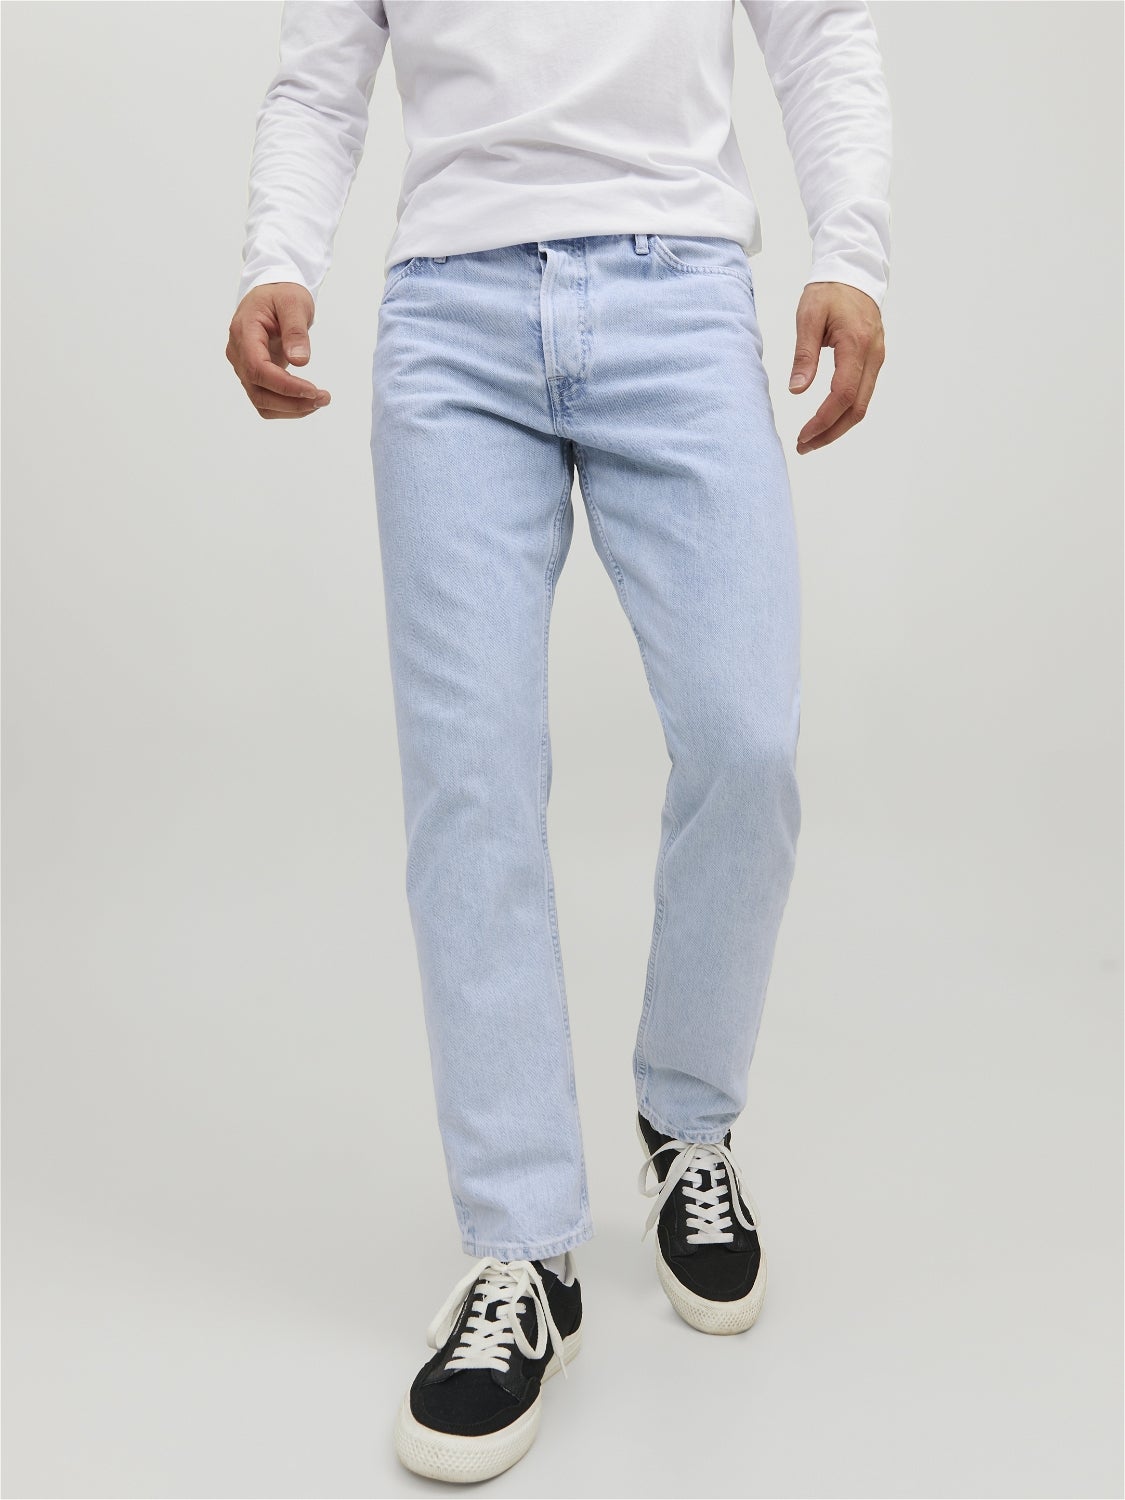 Jack & Jones Jeggings & Skinny & Slim MODA UOMO Jeans Consumato Blu W32/L34 sconto 52% 